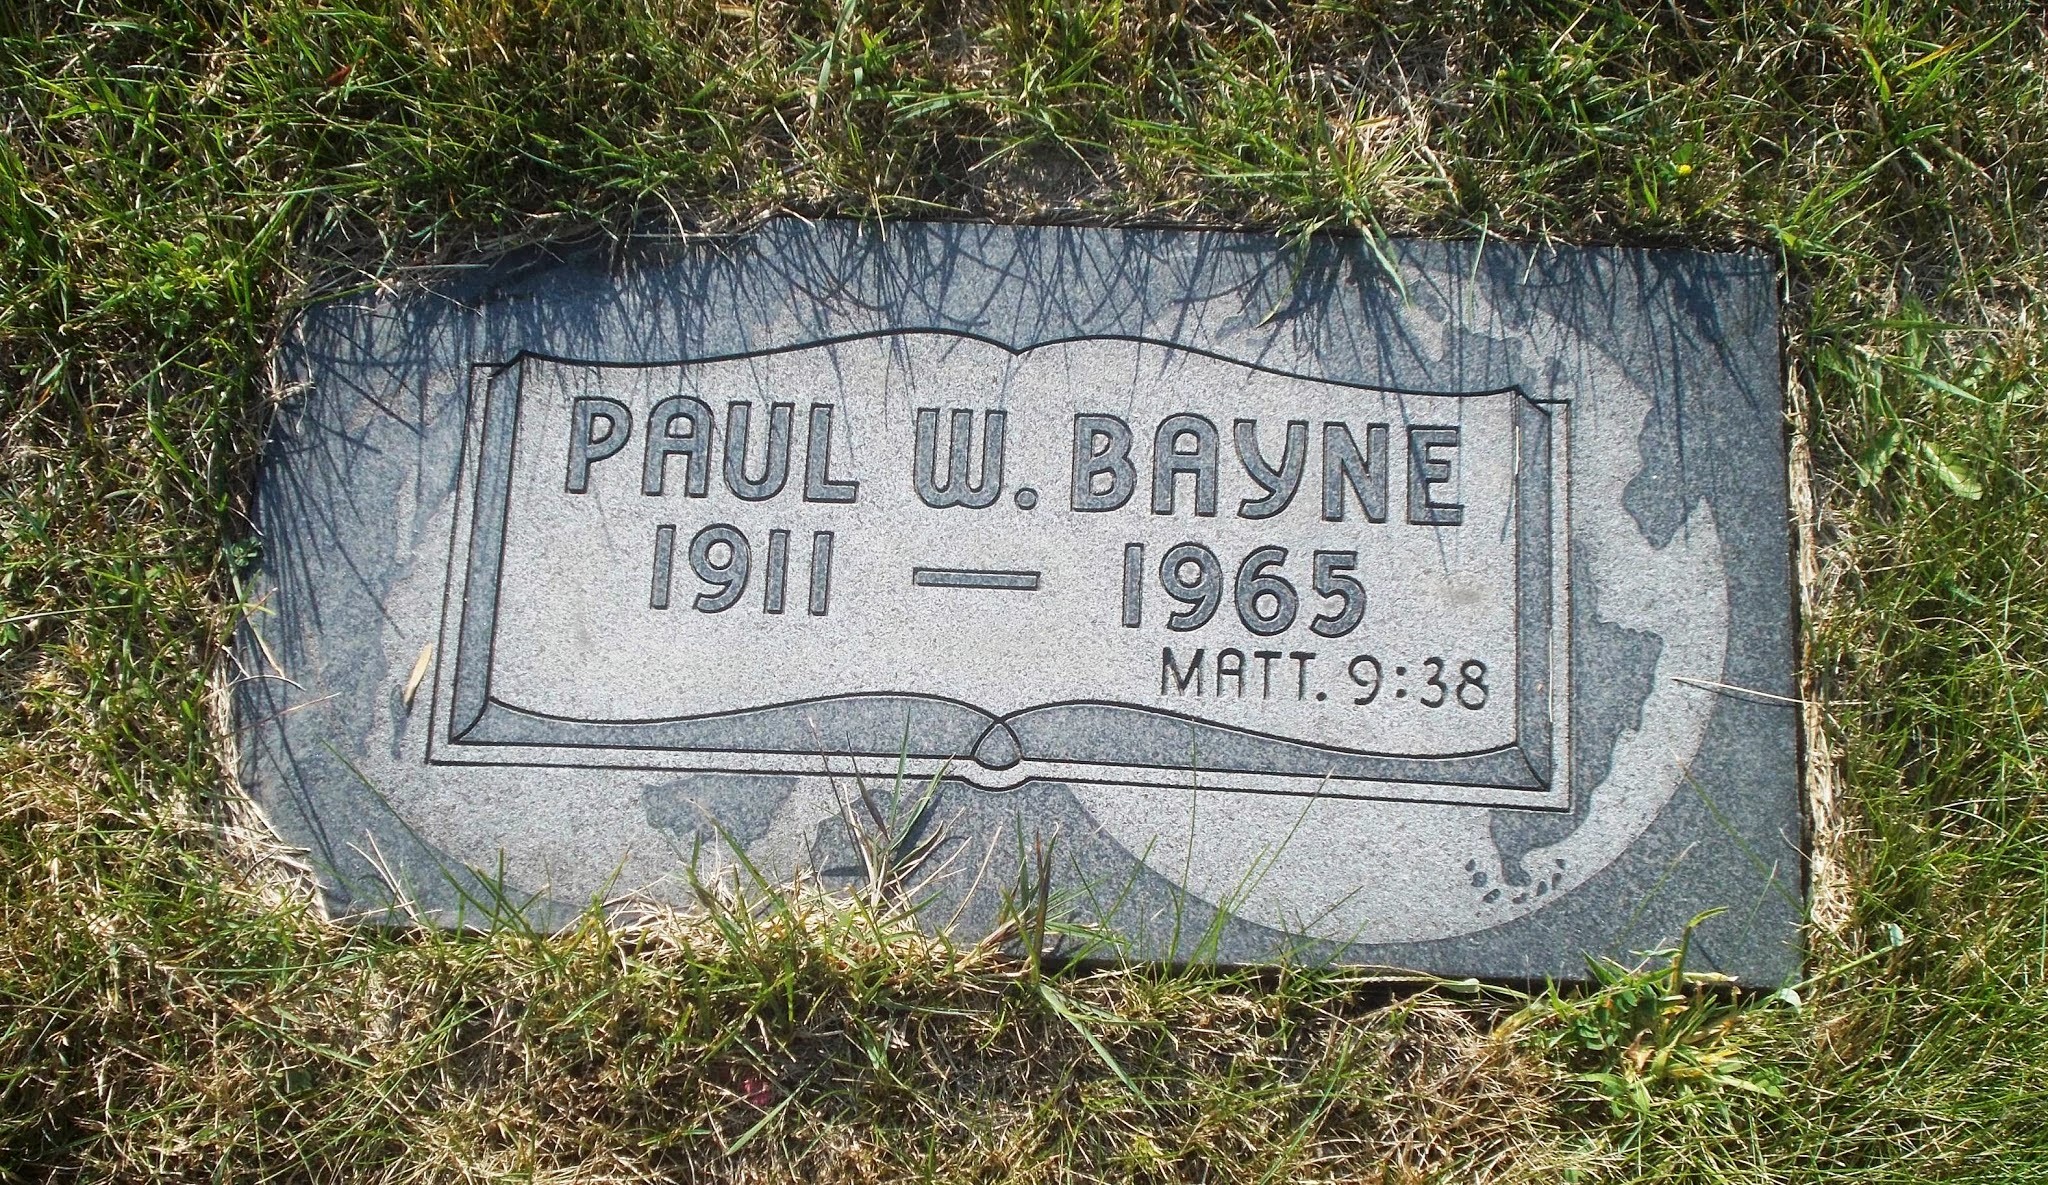 Paul W Bayne